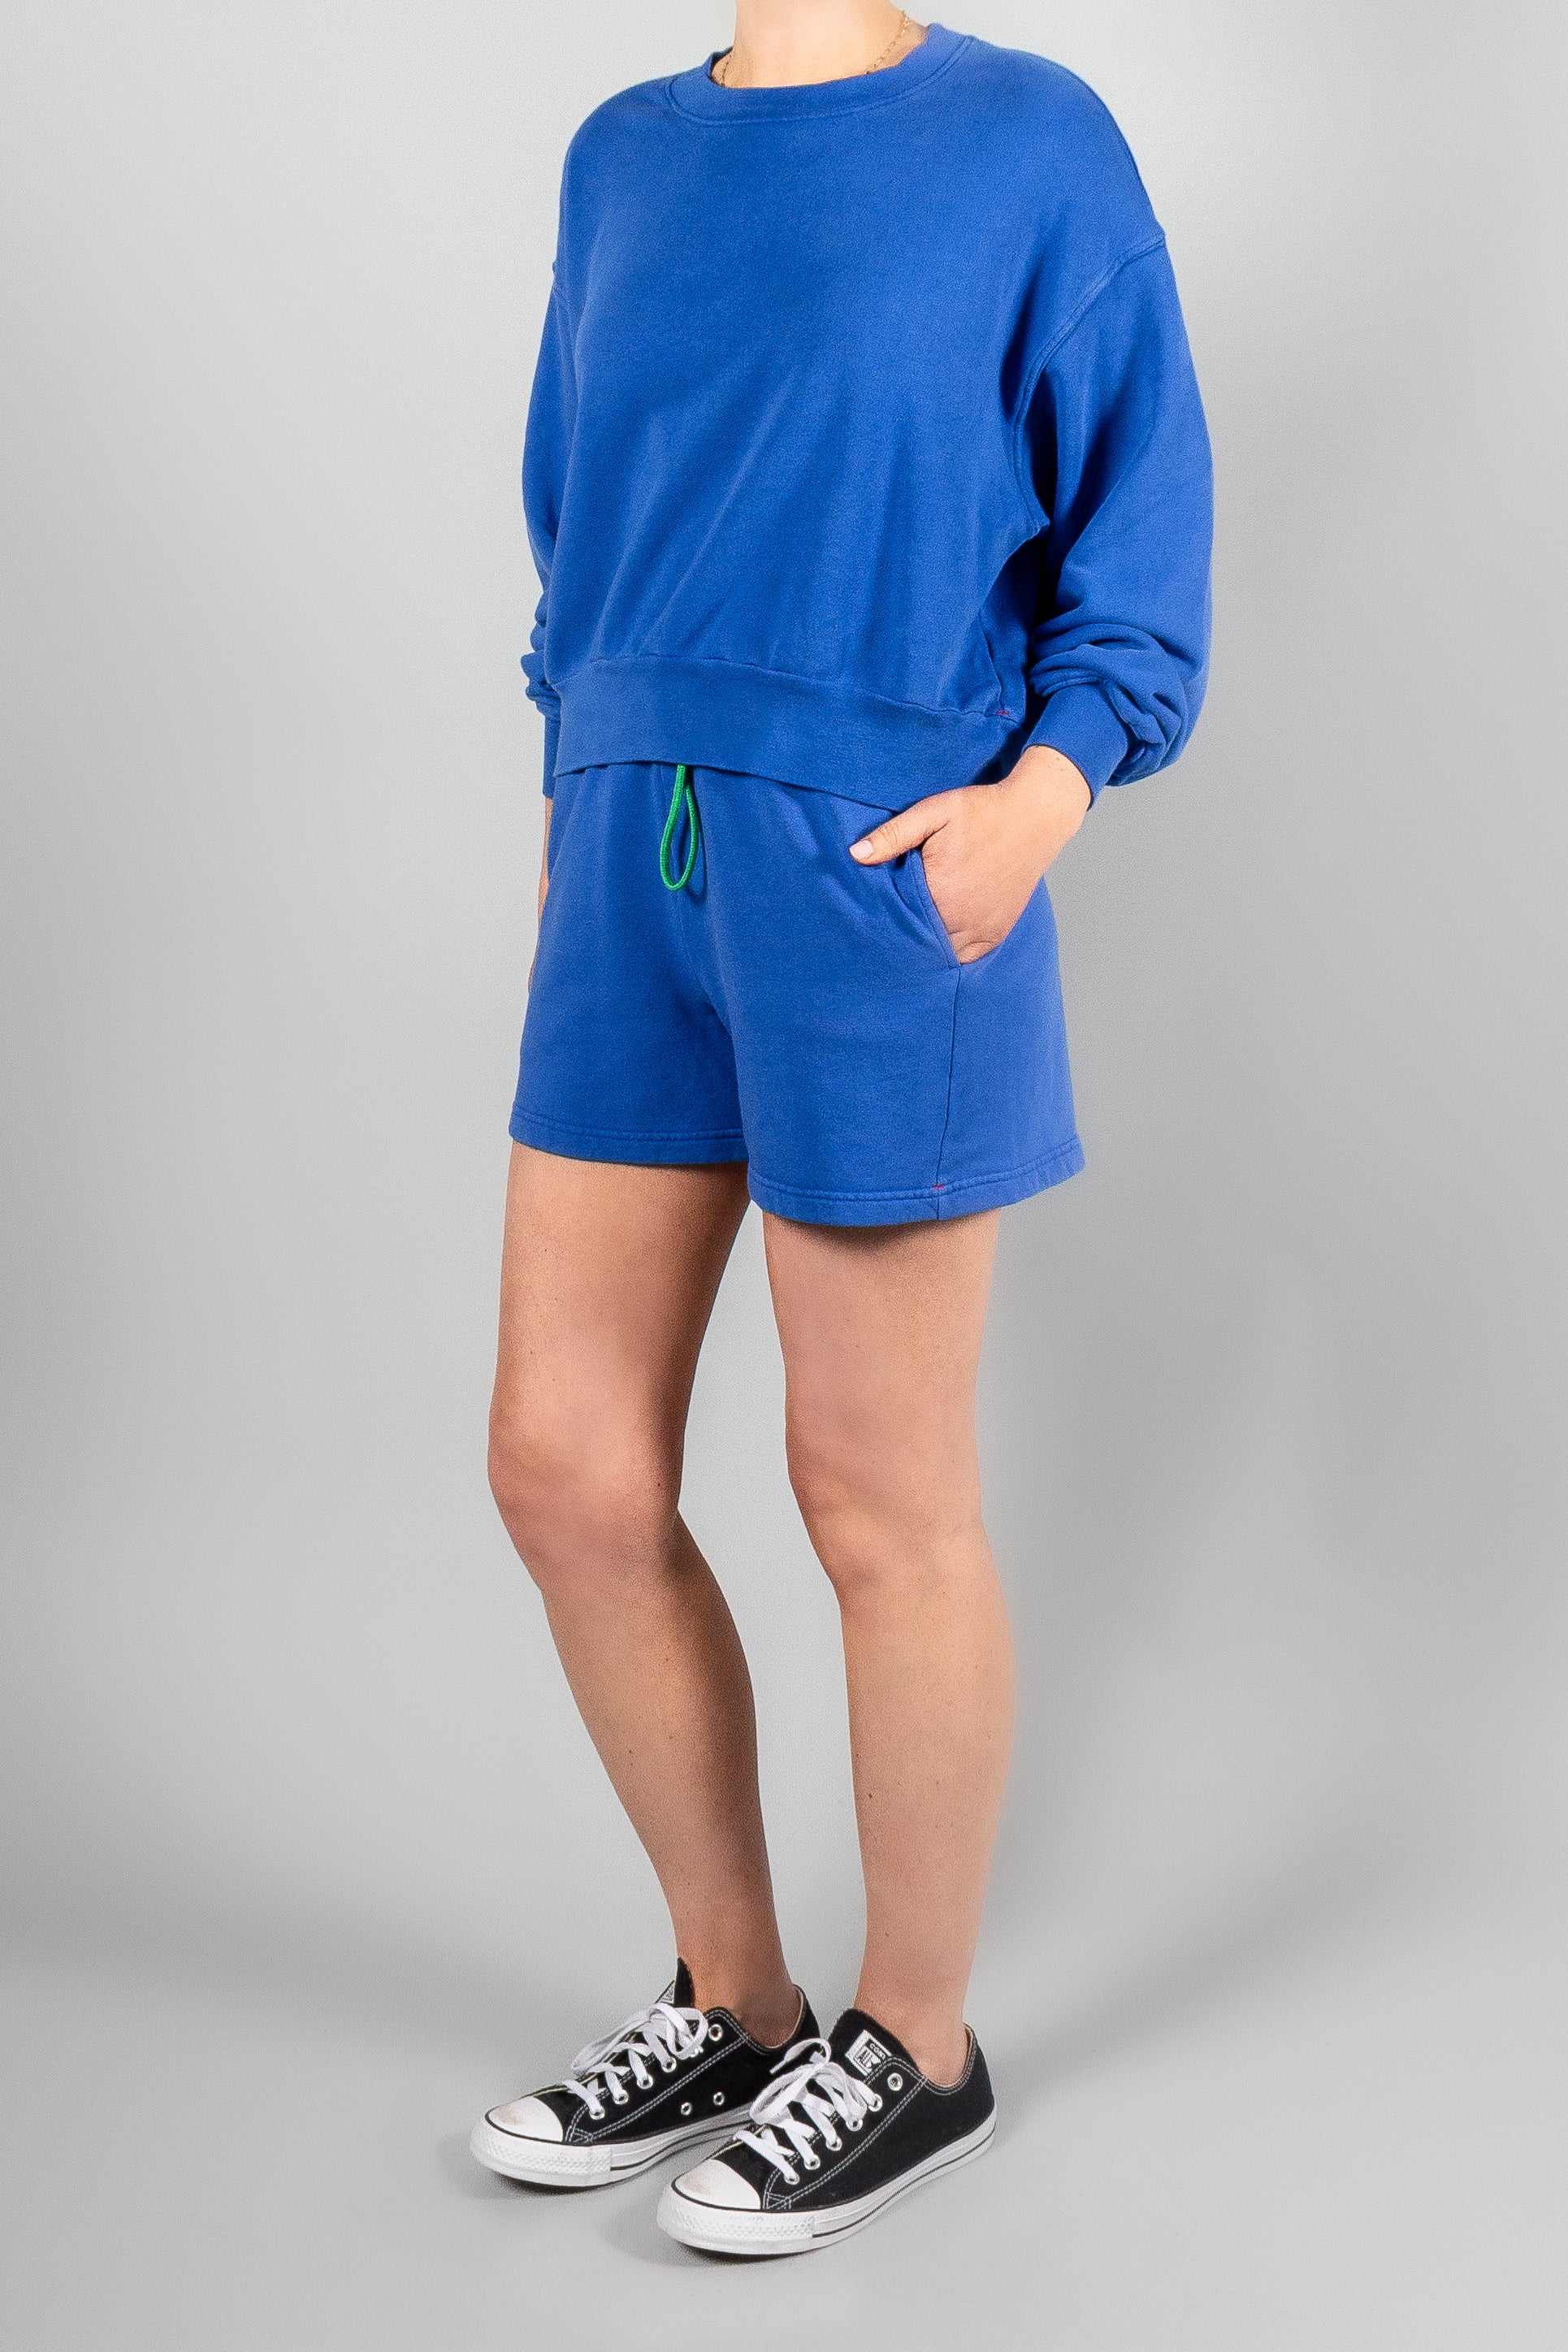 Xirena Huxley Sweatshirt-Tops-Misch-Boutique-Vancouver-Canada-misch.ca